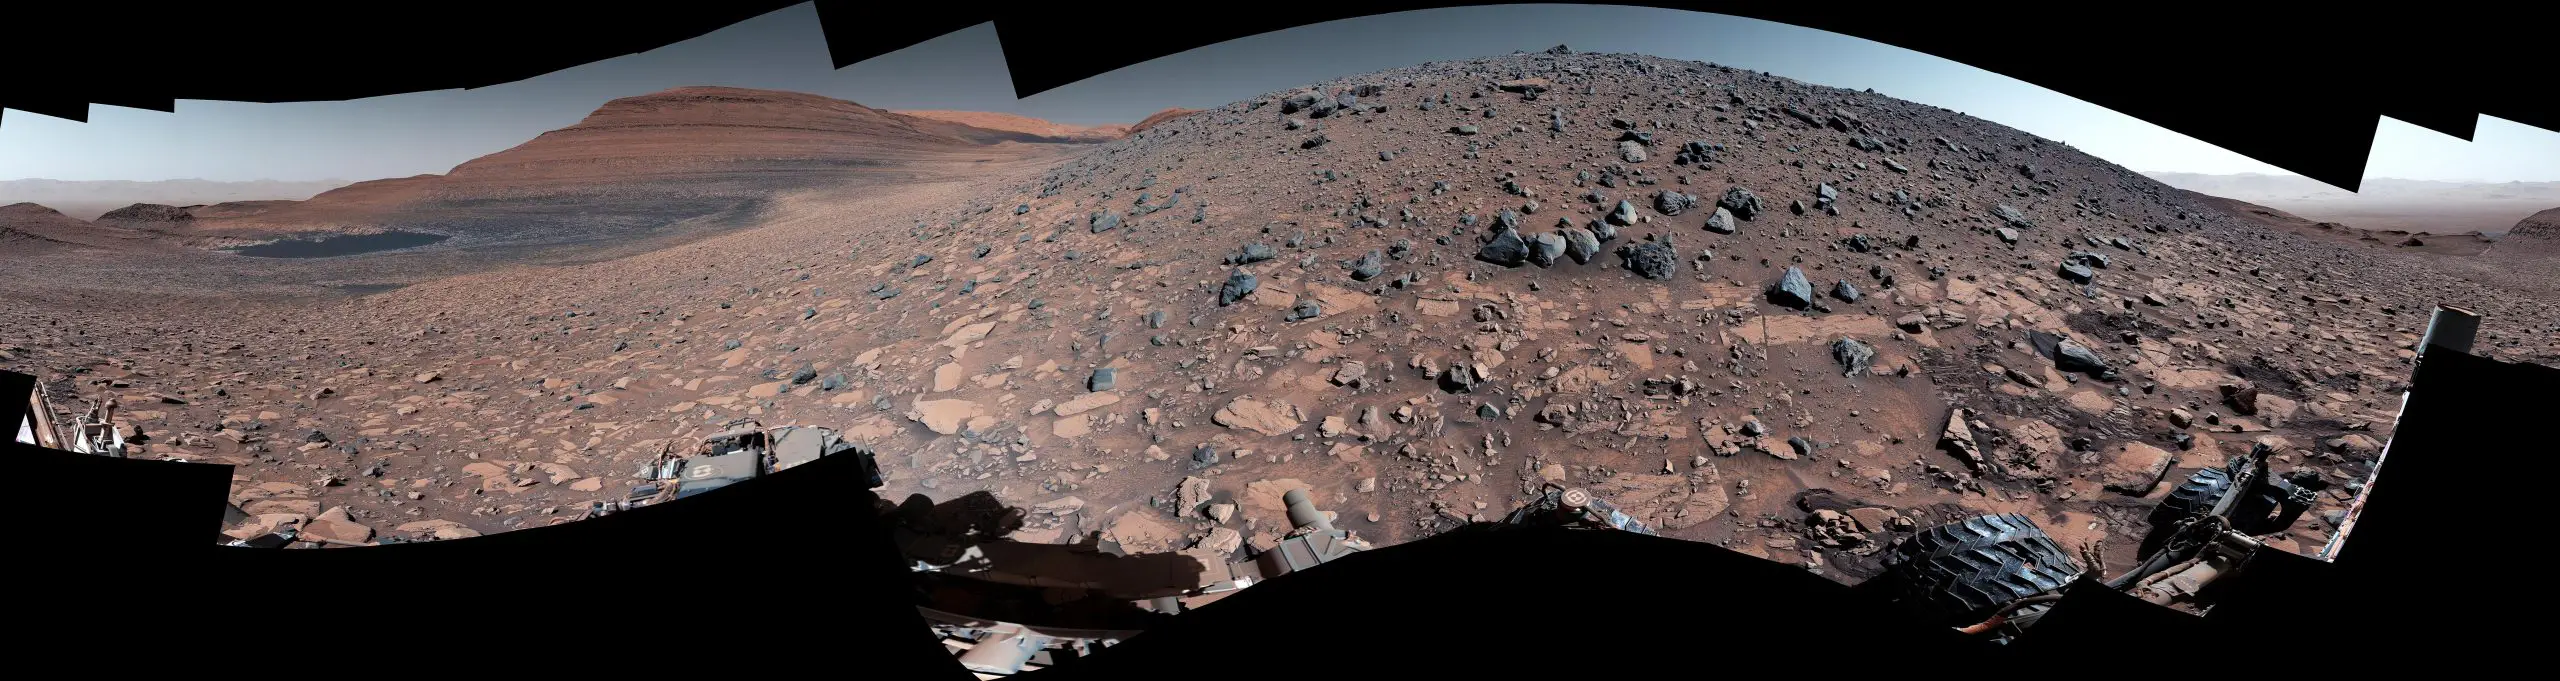 El rover Curiosity de la NASA llega al borde de Marte donde el agua dejó una acumulación de escombros